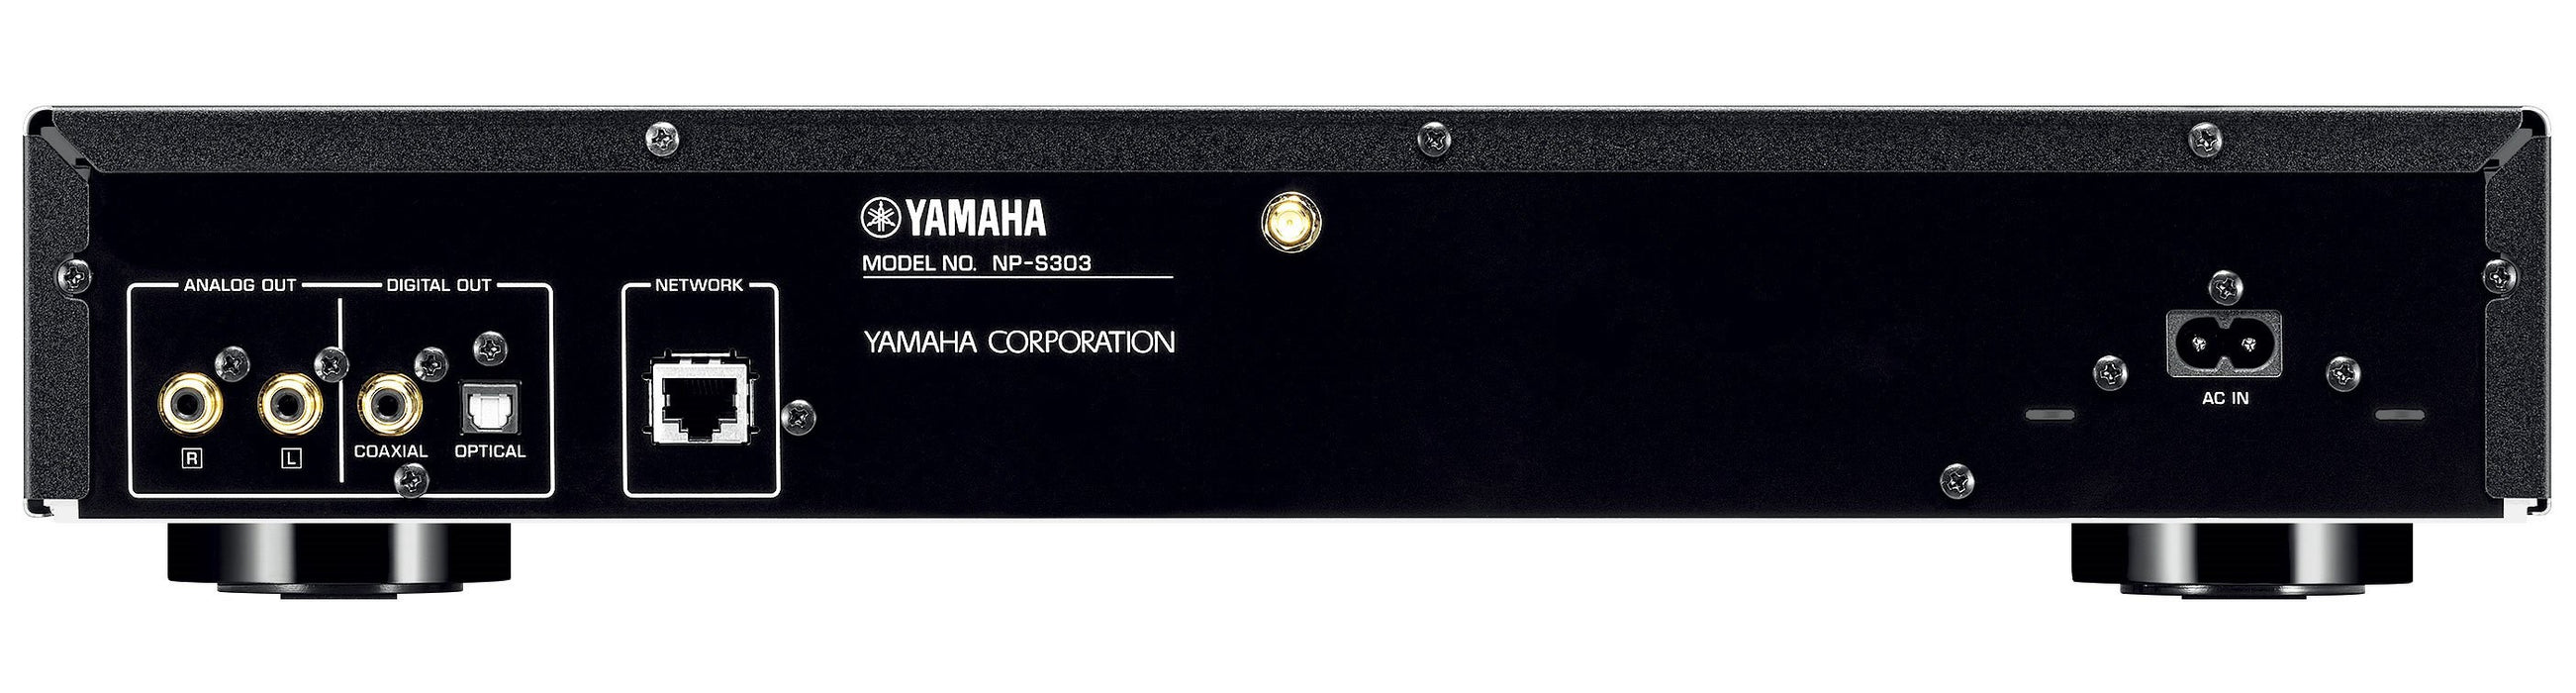 Yamaha - Np-S303 - Musiccast Verkkosoitin - Hopea,  - HifiStudio